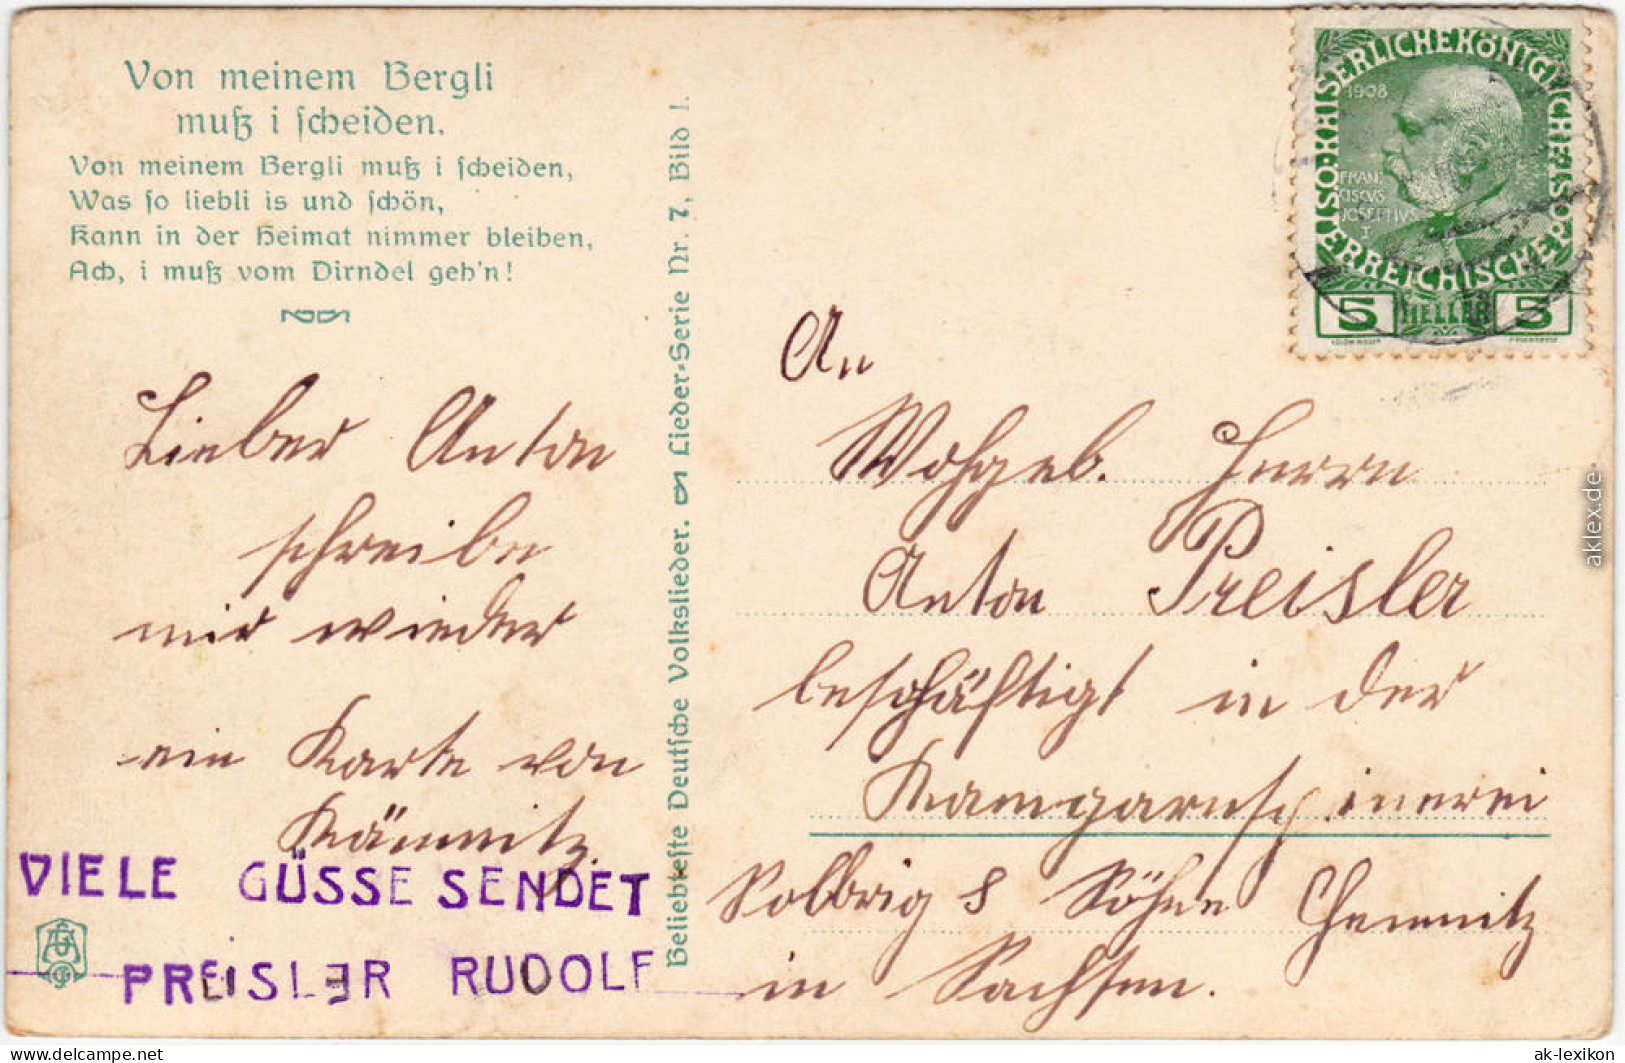  Wanderer In Tracht - Alm - Liederkarte Von Einem Bergli Muss I Scheiden 1913  - Musik